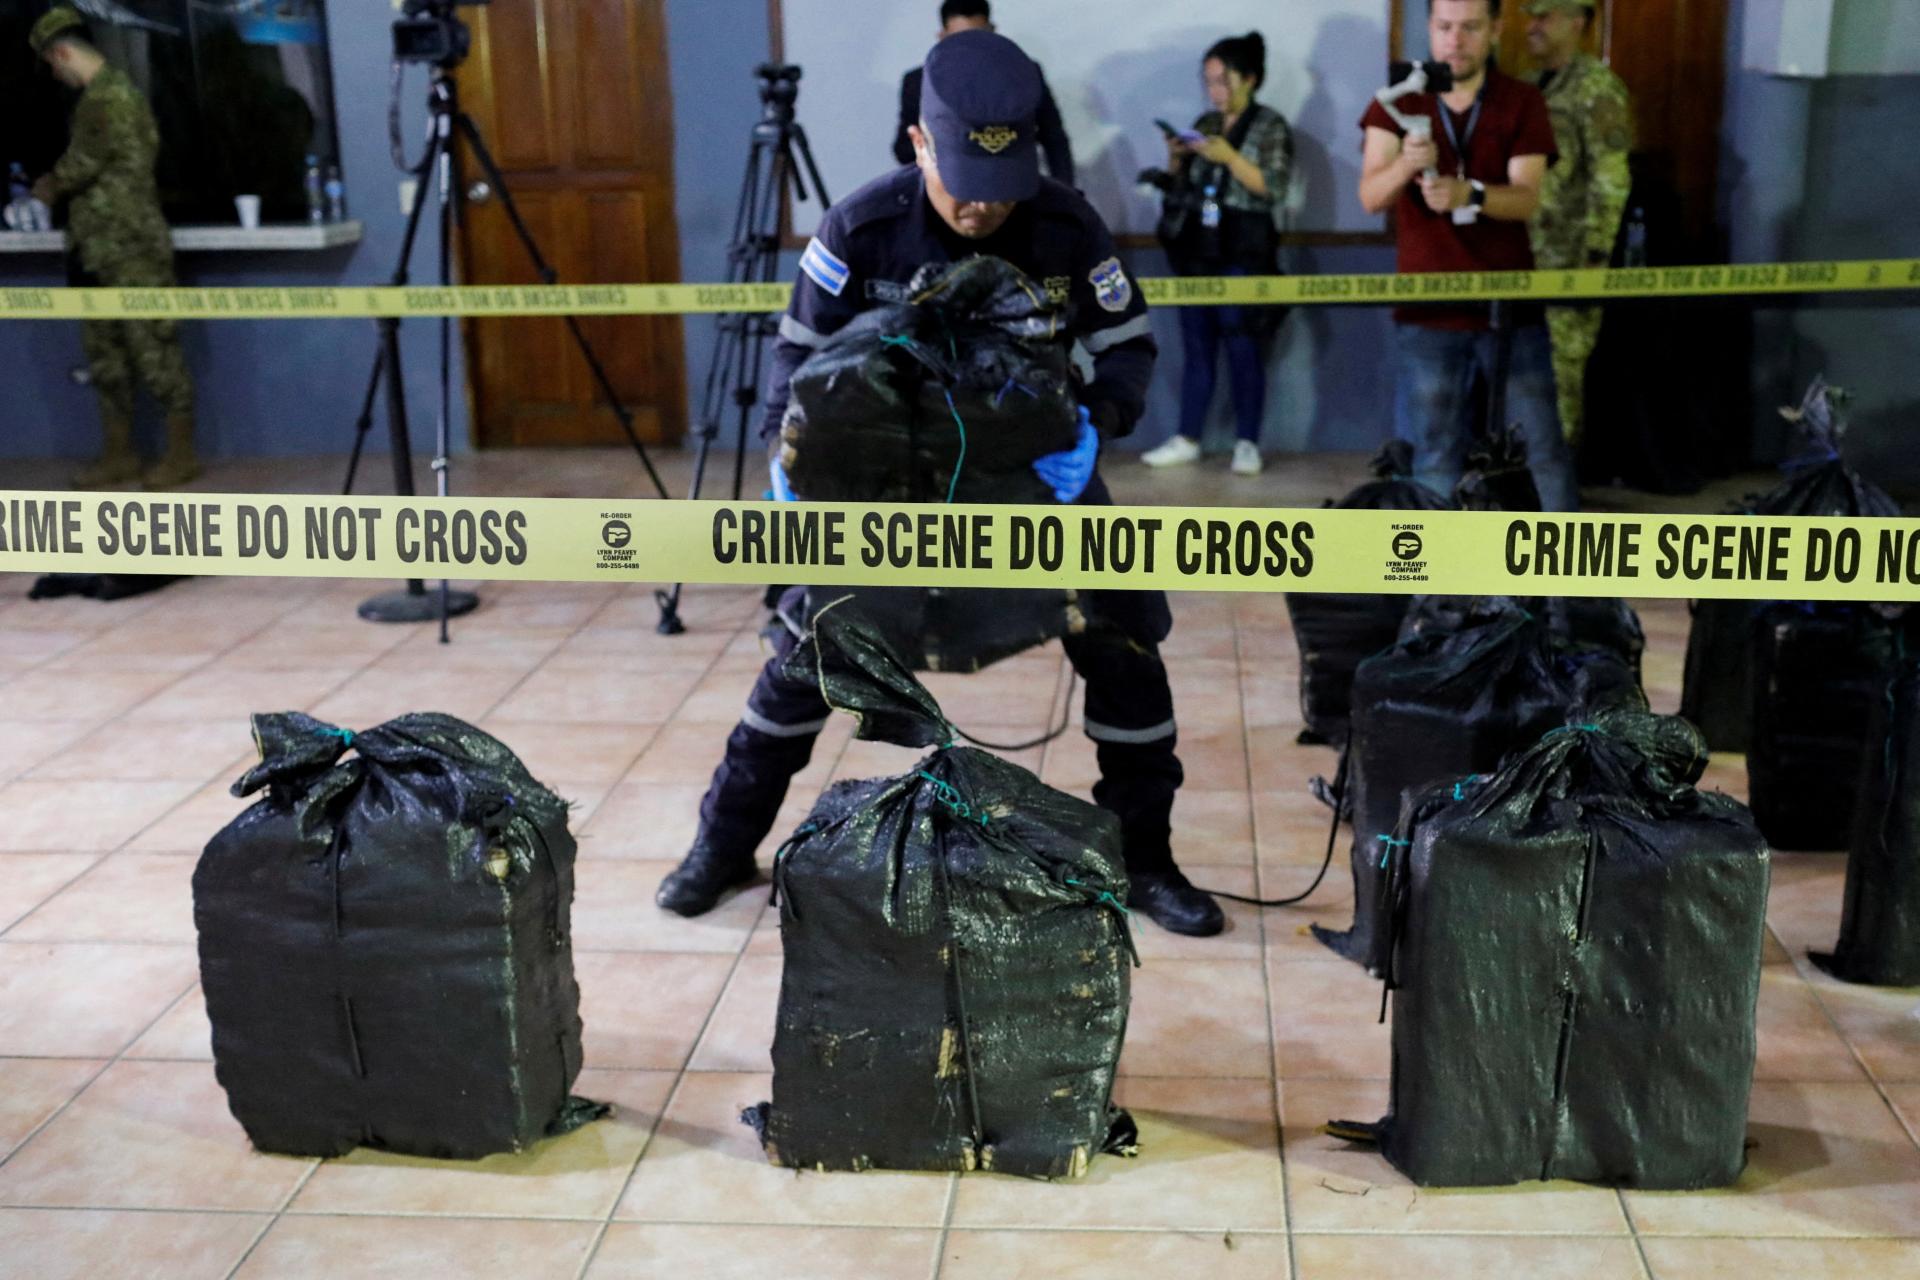 Osem ton kokaínu. Europol rozbil veľký drogový kartel, ktorý dodával nelegálne látky do Európy